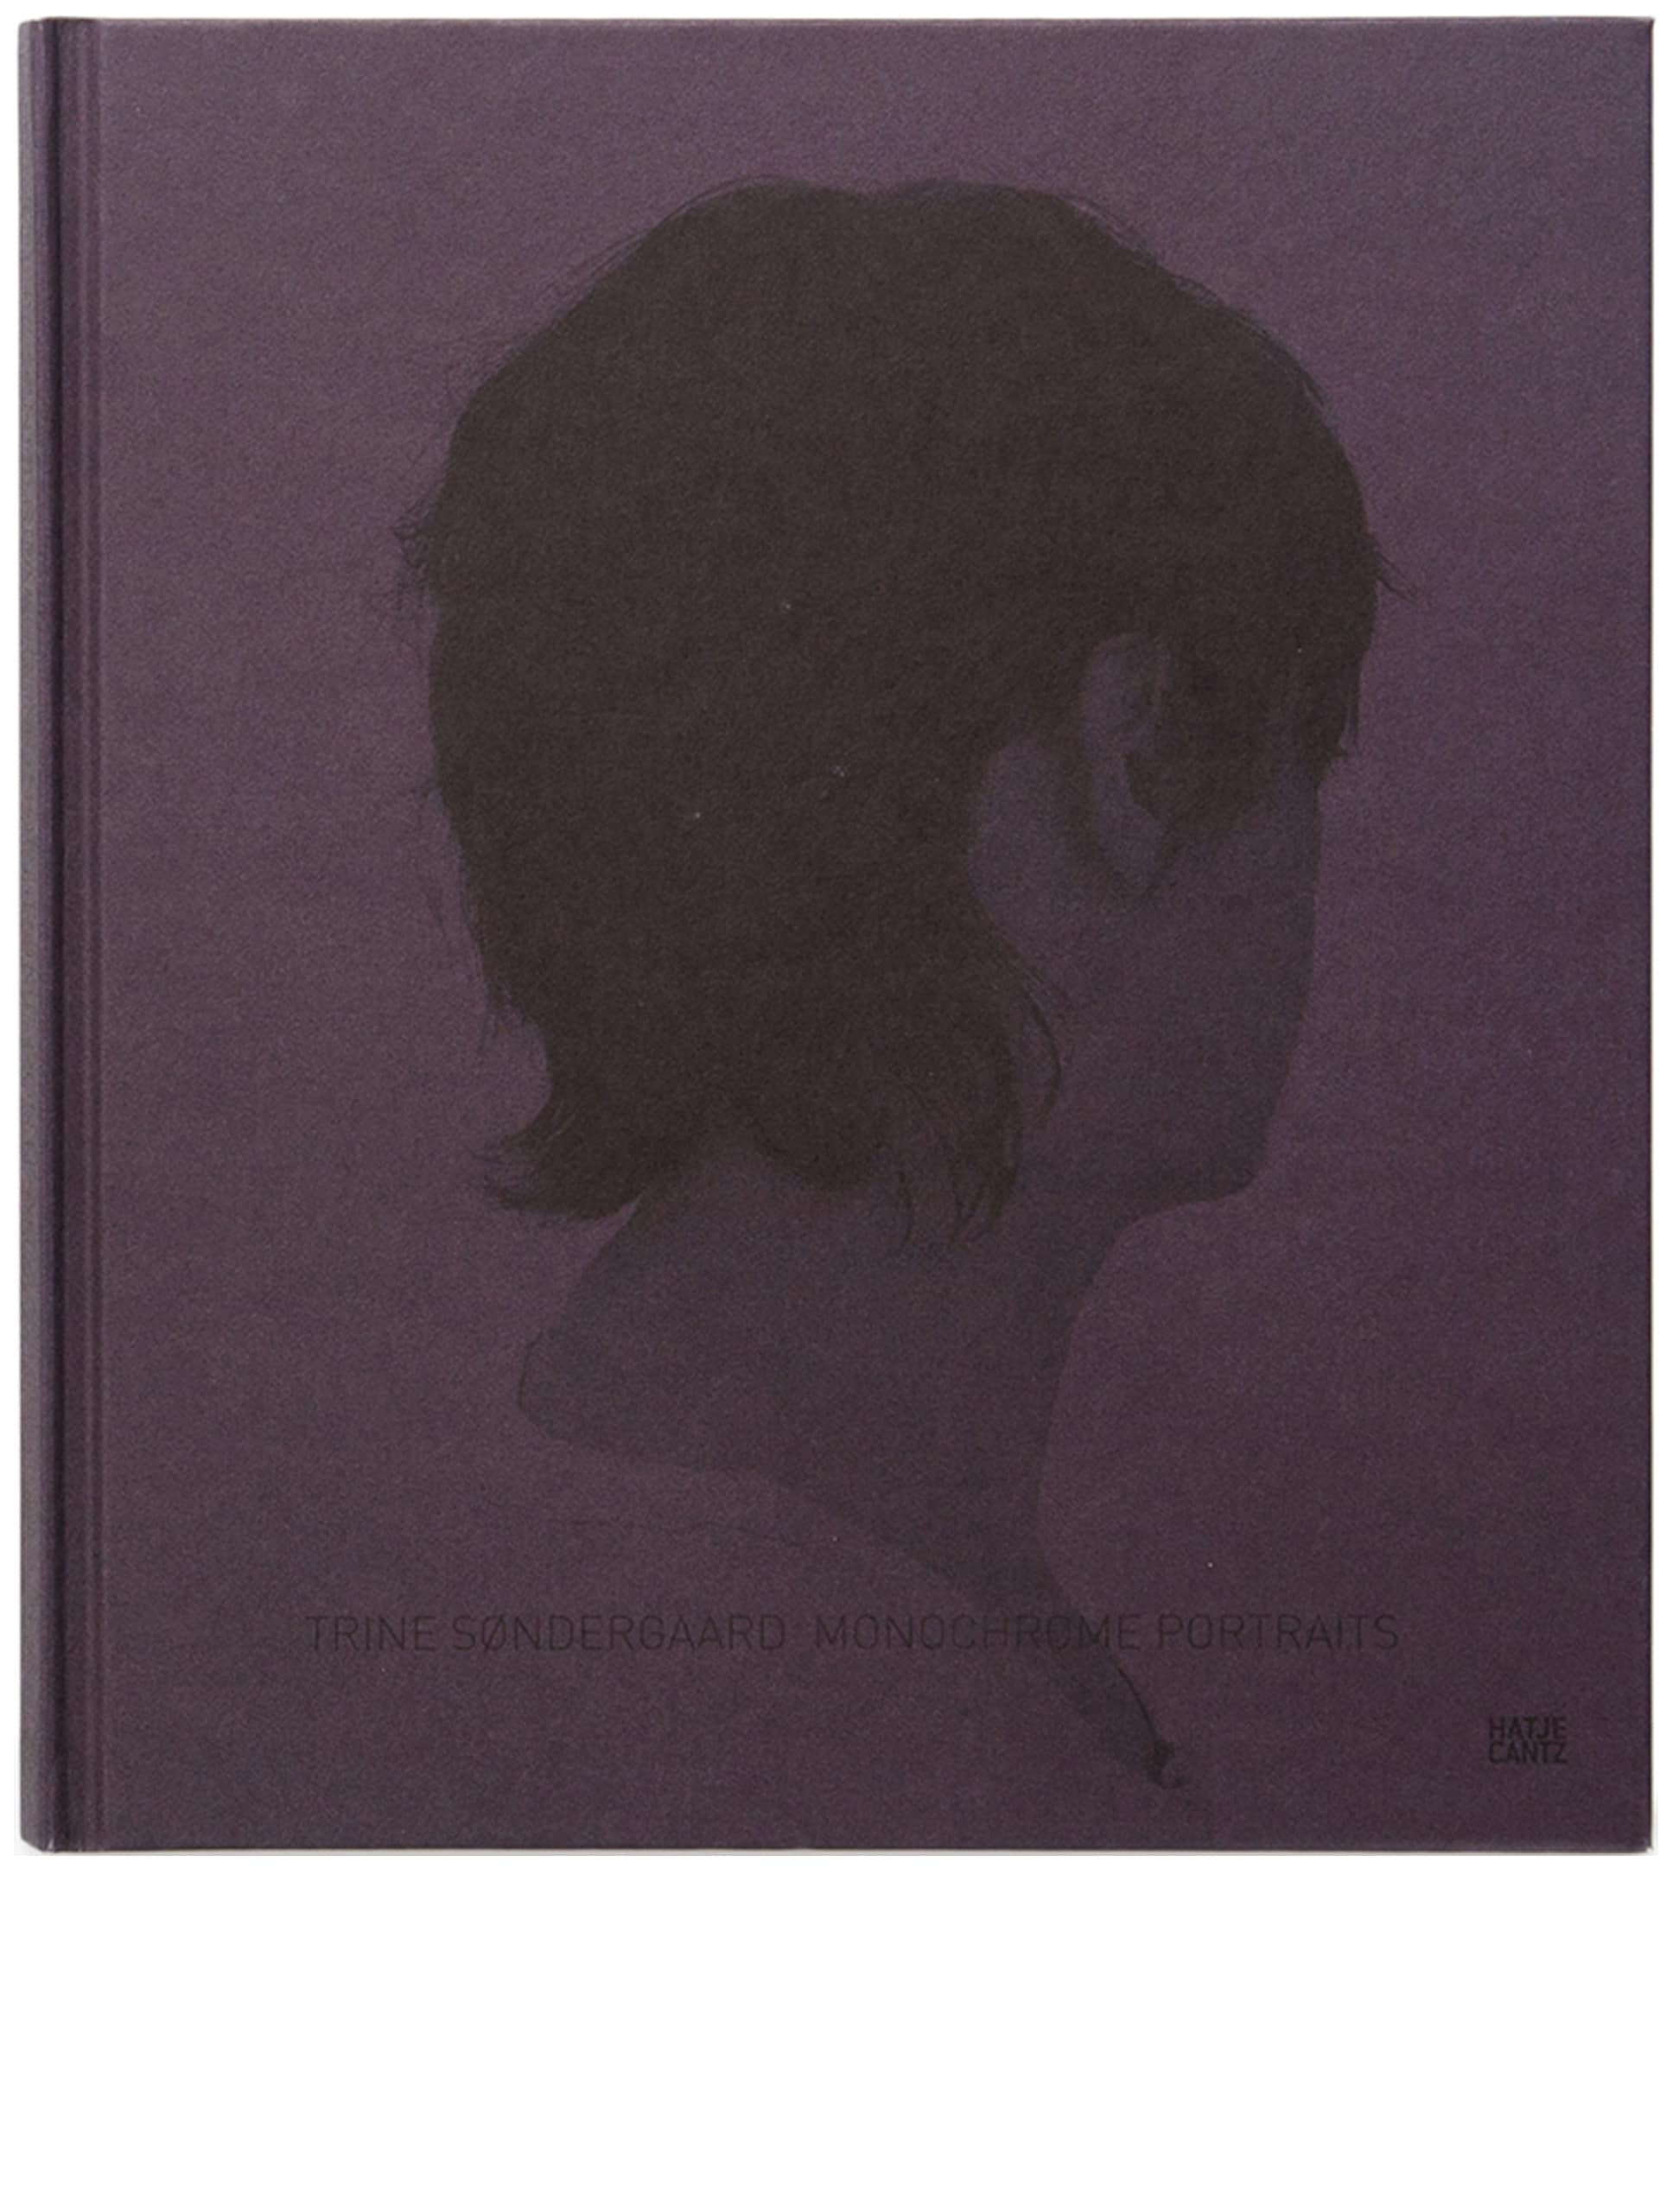 Monochrome Portraits - Book by Trine Søndergaard